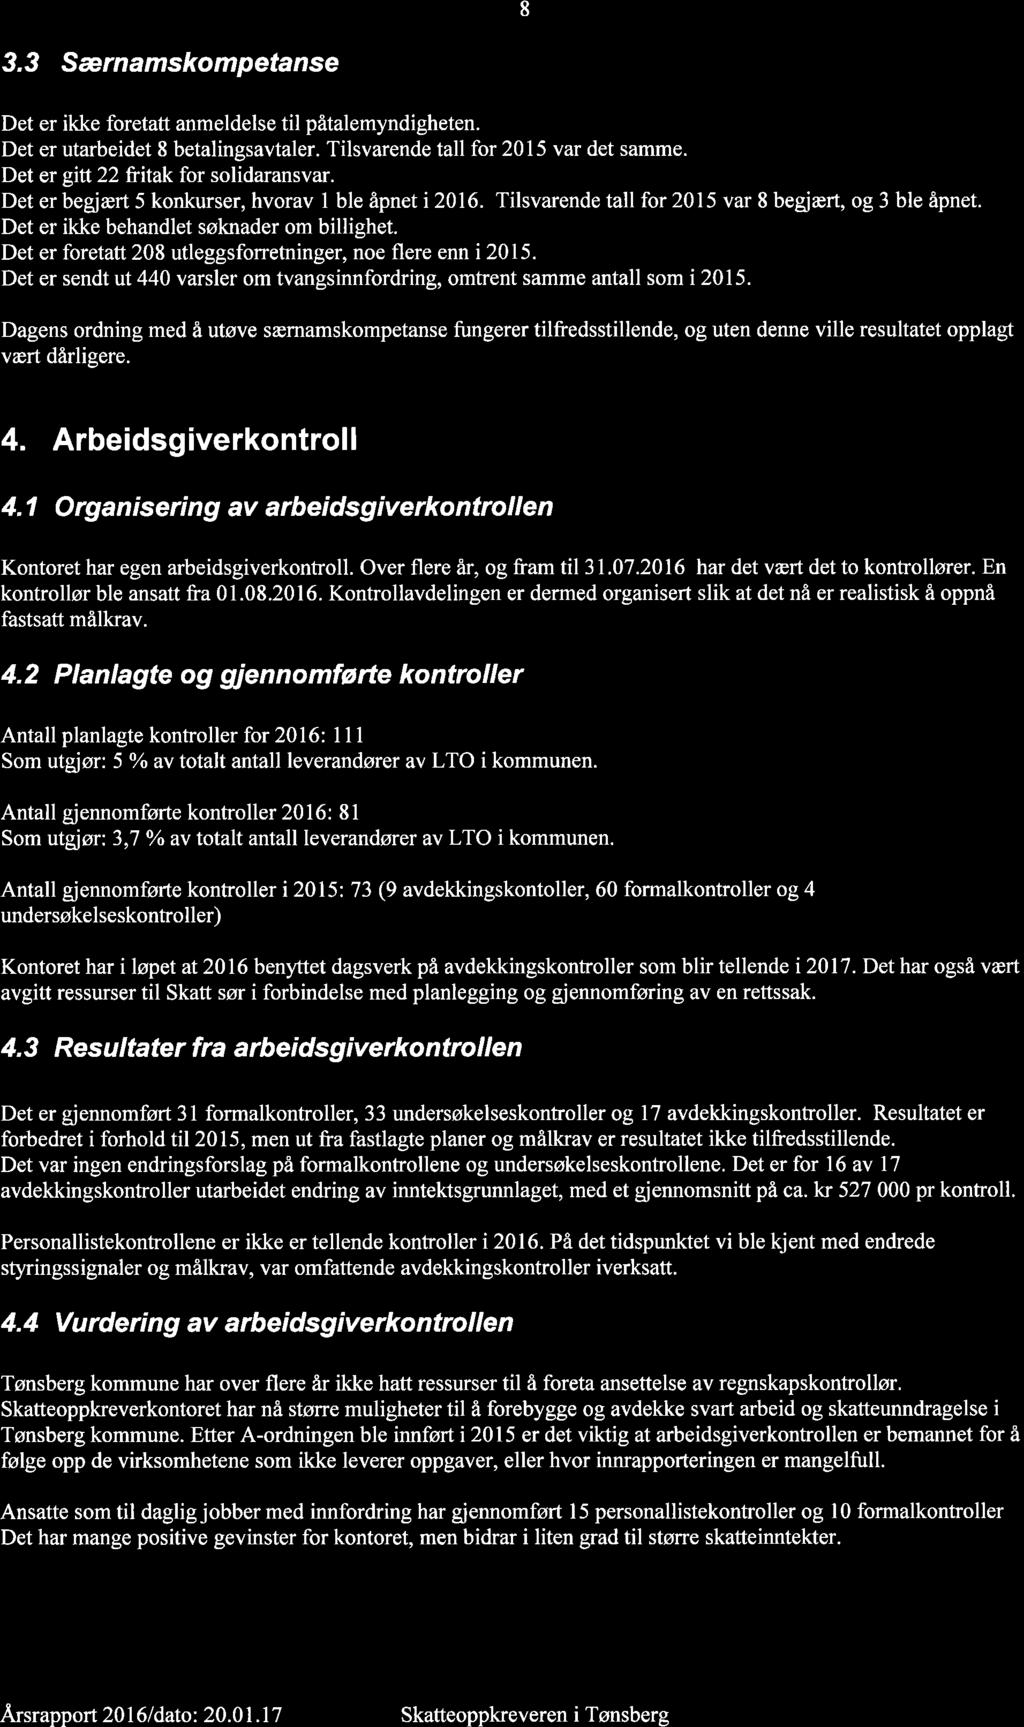 17/17 Referatsaker - 16/00206-6 Referatsaker : Årsrapport 2016-0704 Tønsberg 8 3.3 Det Det Det Det Det Det Det Særnamskompetanse er er er er er er er ikke foretatt anmeldelse til påtalemyndigheten.